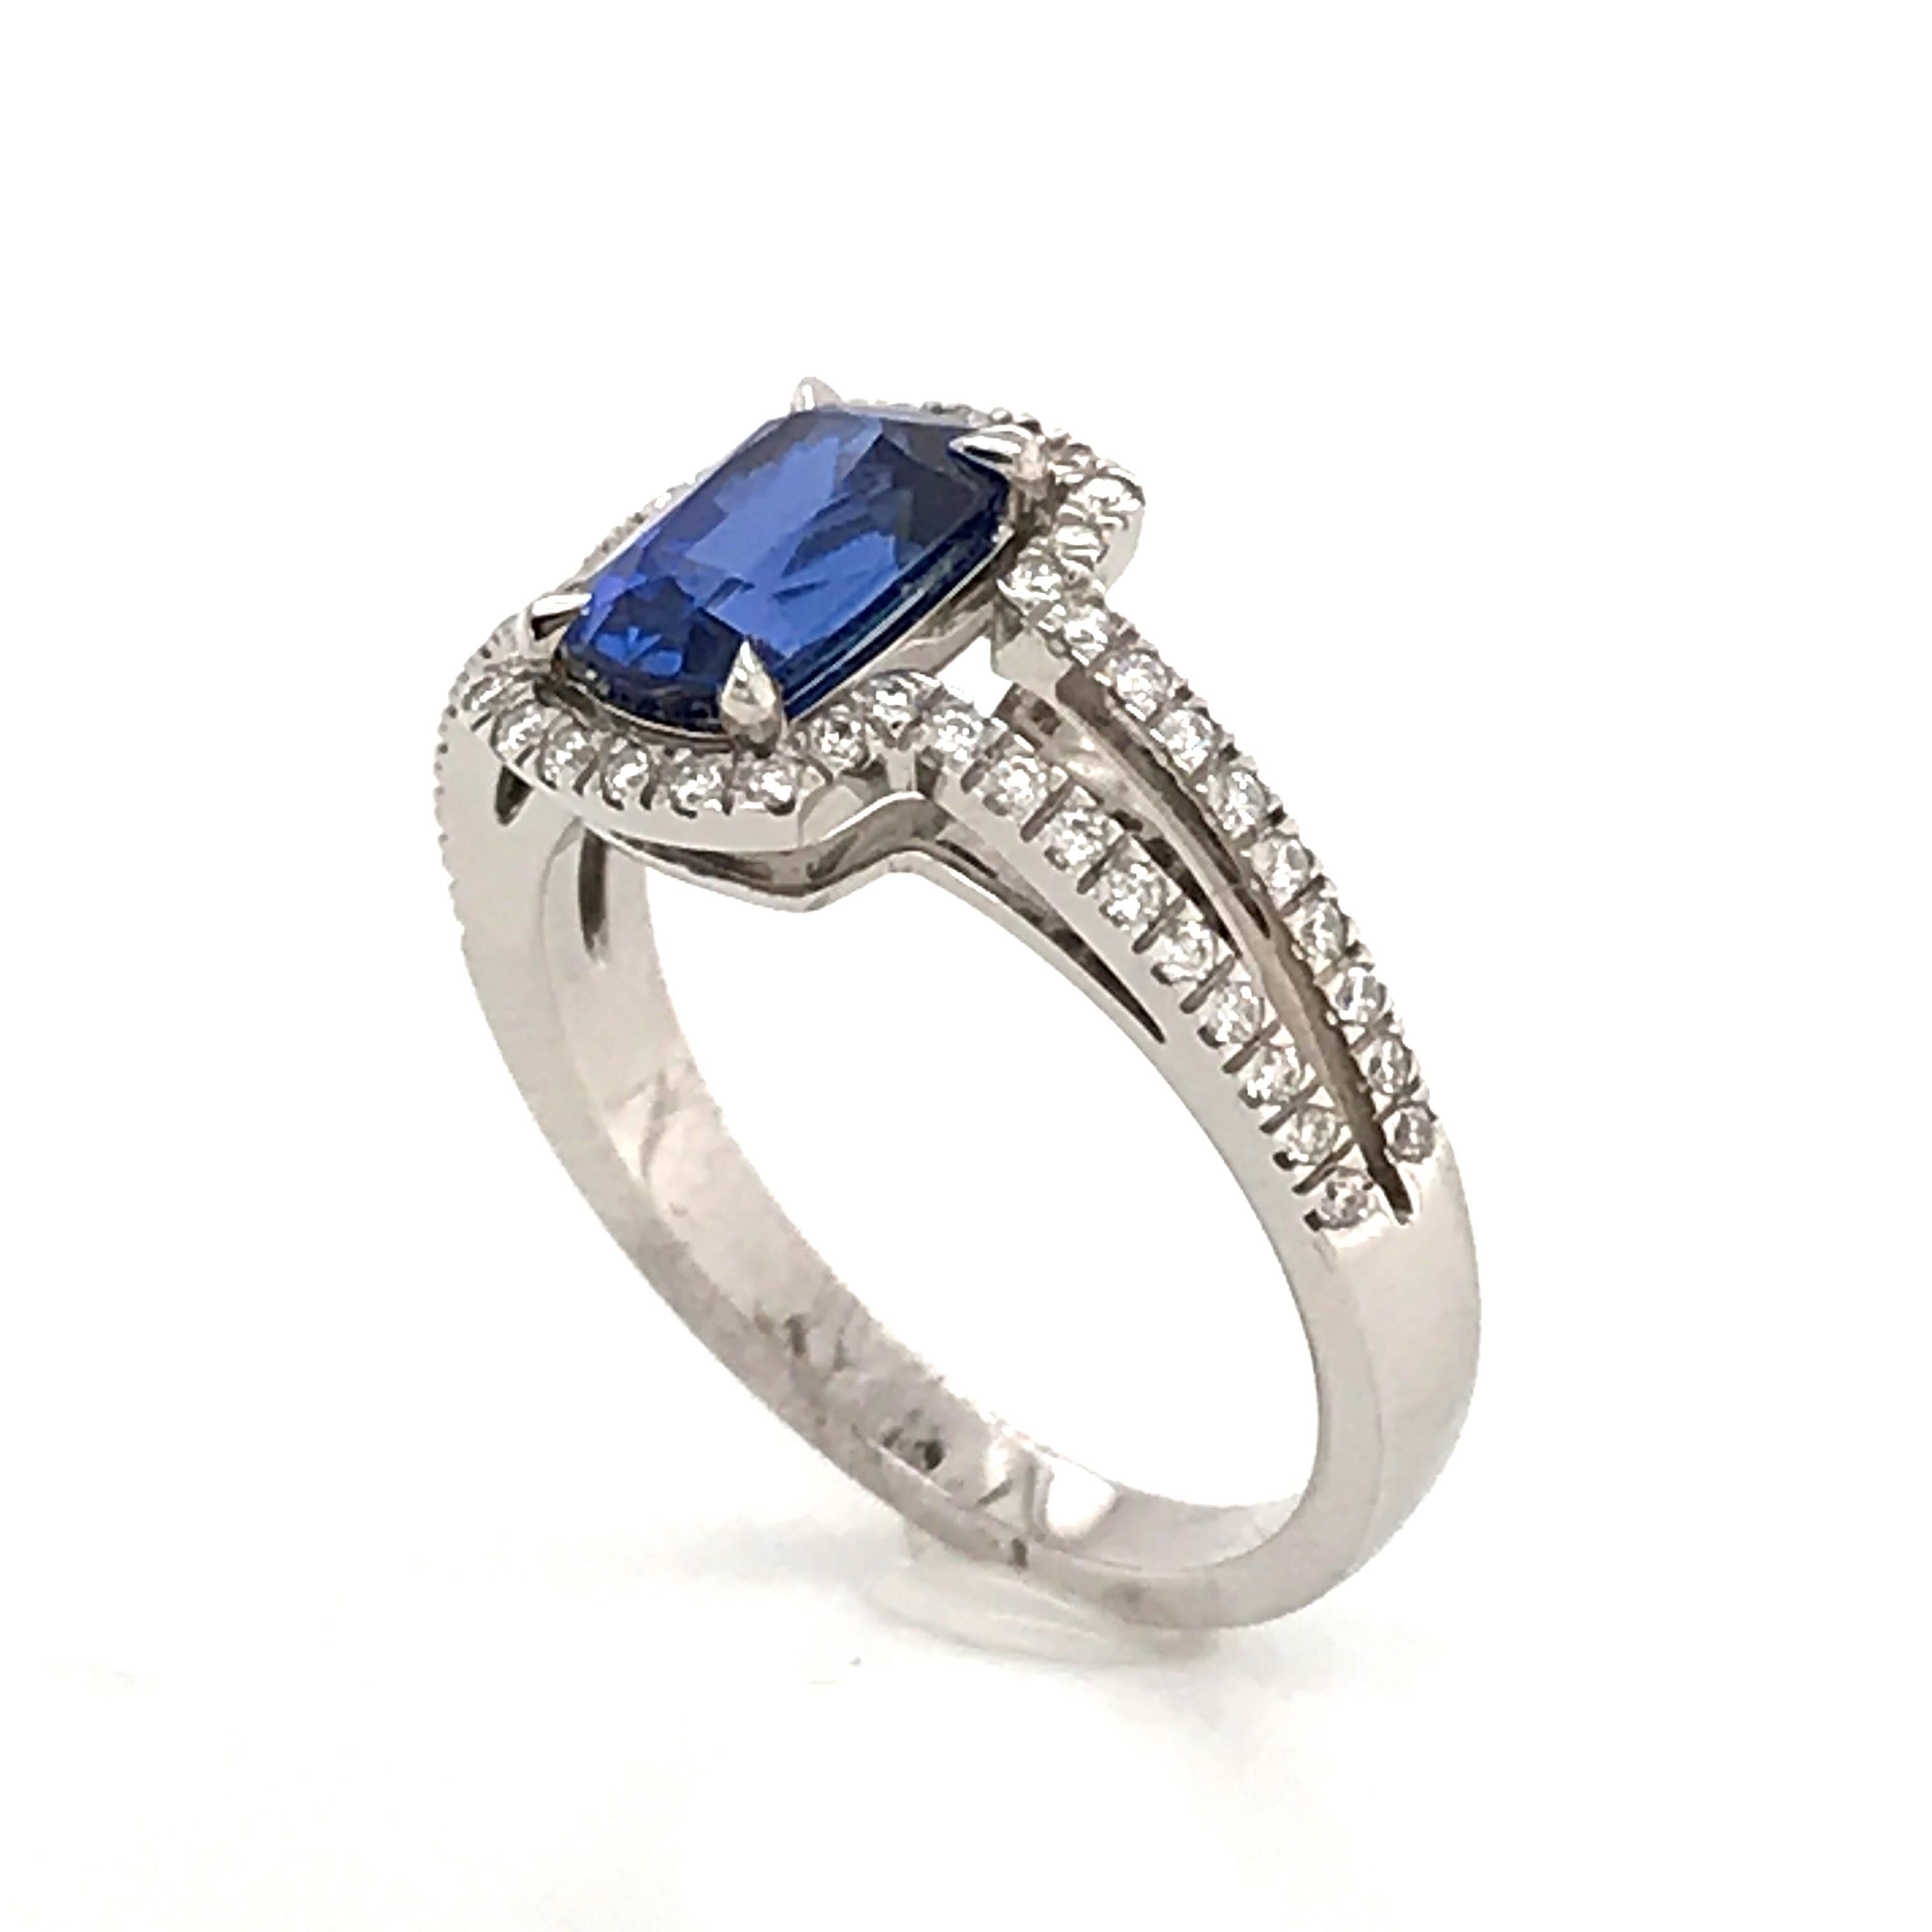 Saphir Ceylan and Whites Diamonds on White Gold 18 Karat Engagement Ring 8